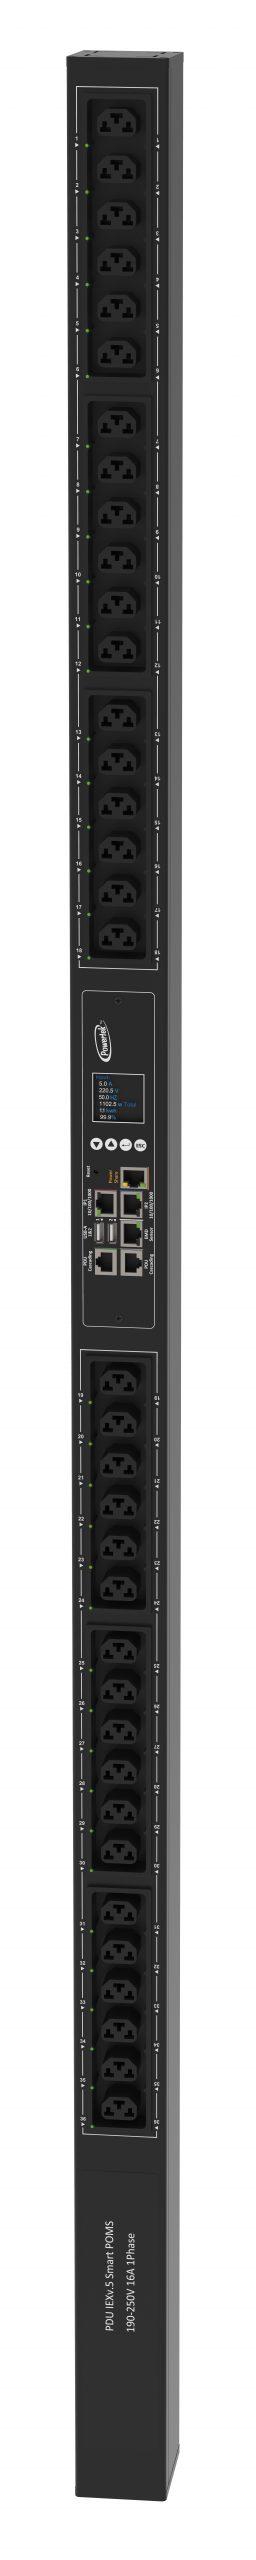 Powertek Intelligent PDU 230V, 1 fase, 16amp, låsning af power kabler, C13/C19 kombination i samme udtag, 36 udtag redundant netværks mulighed, OLED display, overvågning af sikringer